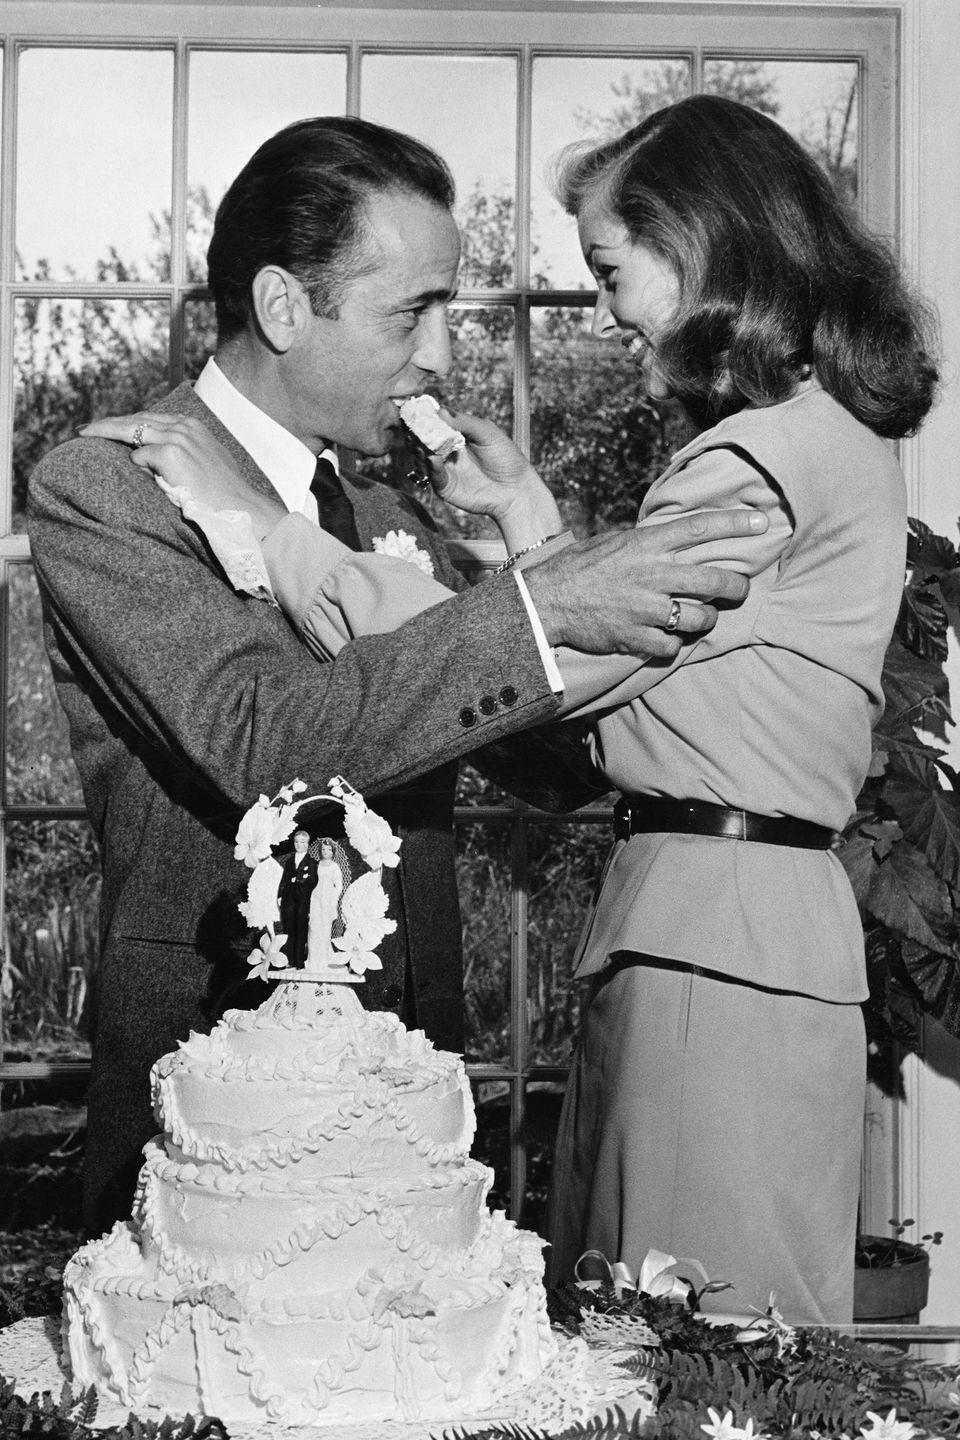 1945: Humphrey Bogart and Lauren Bacall